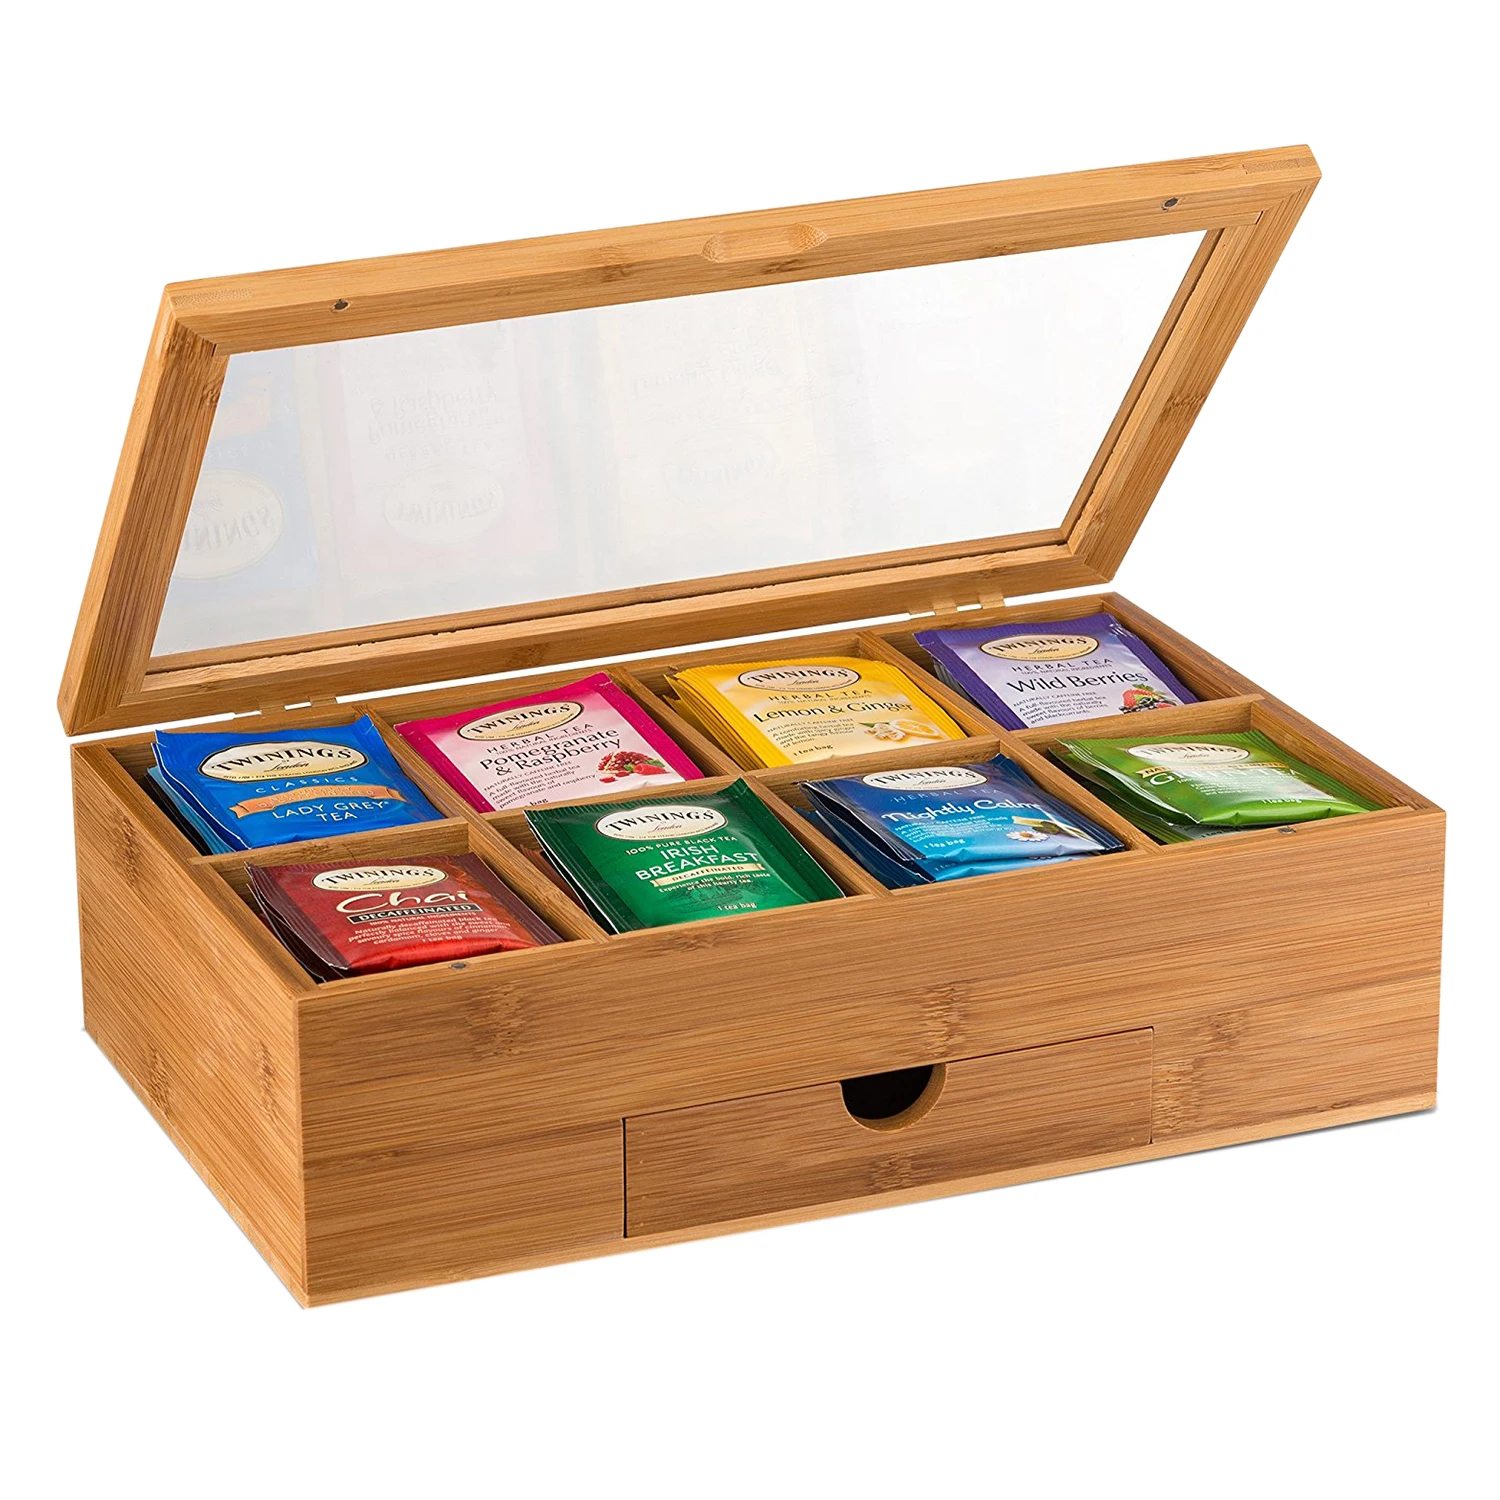 Горячая, органайзер для чая, Бамбуковая коробка для чая с маленьким ящиком, Натуральный Бамбуковый чайный сундук-отличная идея подарка